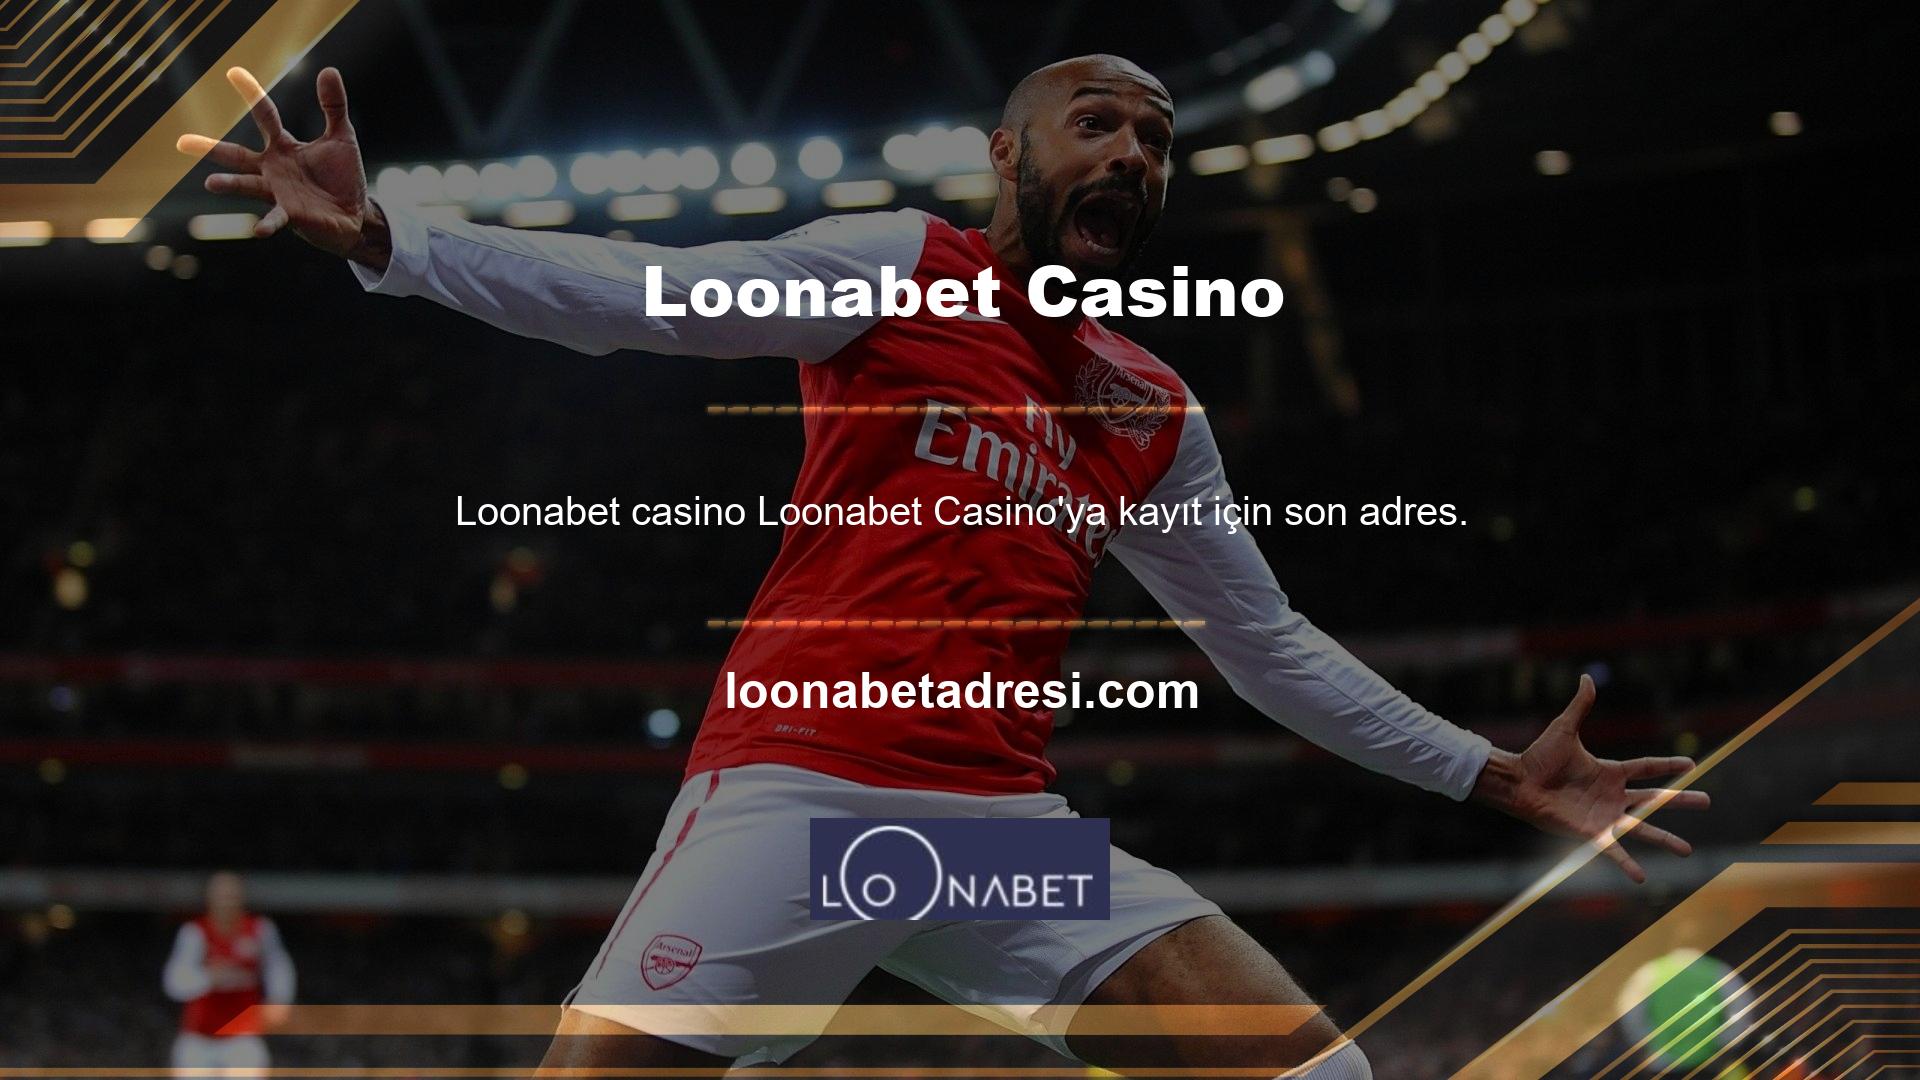 Loonabet Casino'ya kaydolmak için öncelikle üye olmanız gerekmektedir